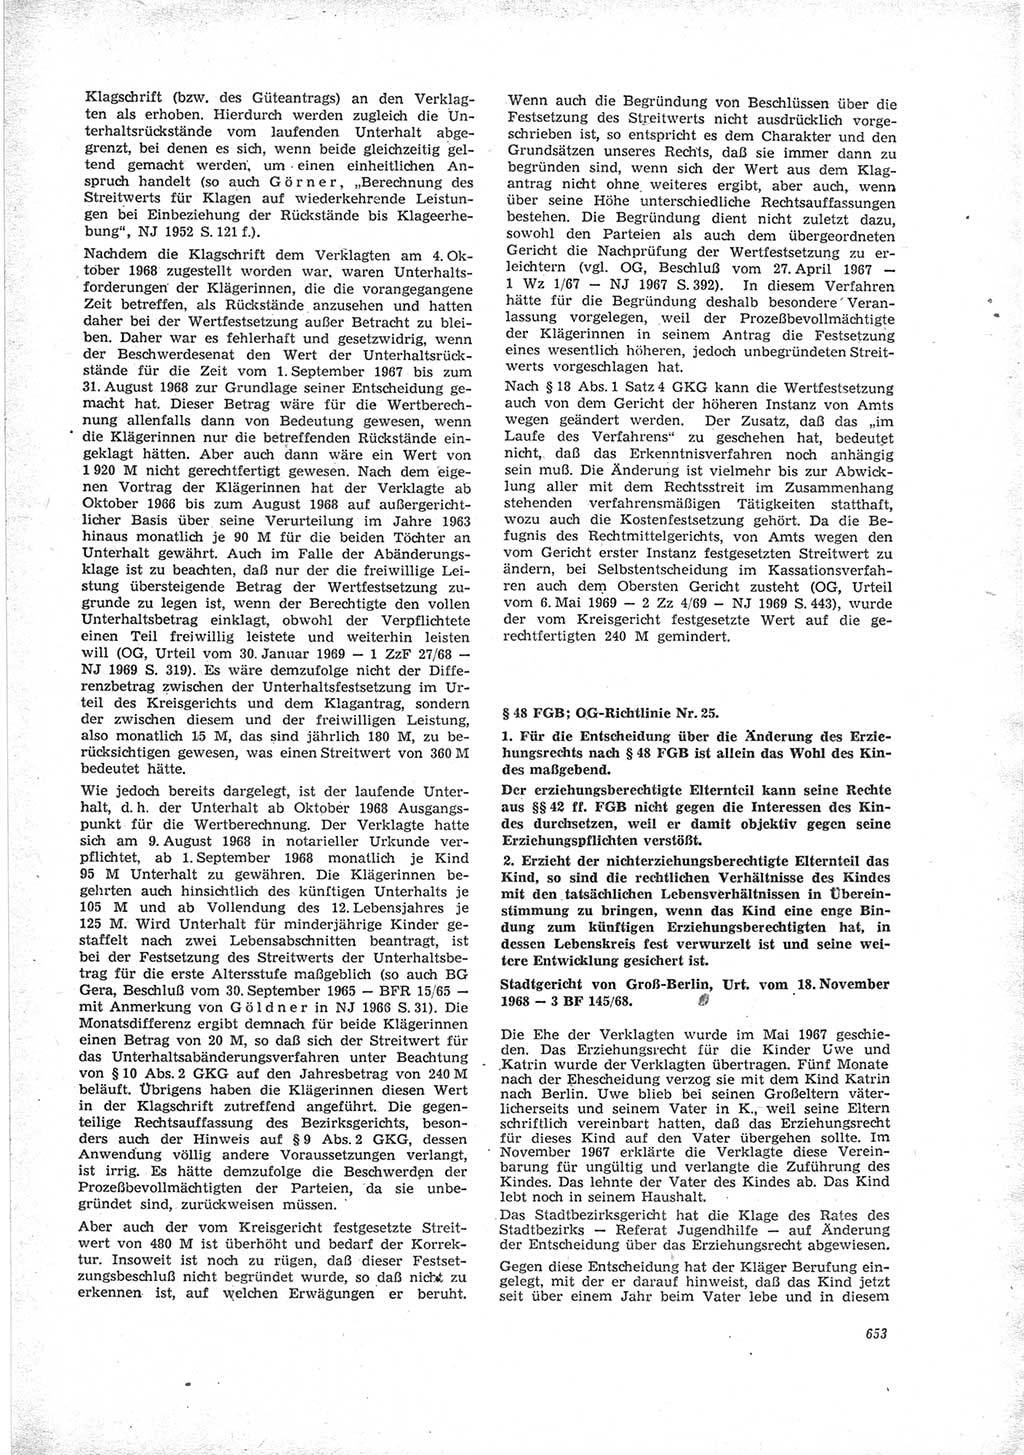 Neue Justiz (NJ), Zeitschrift für Recht und Rechtswissenschaft [Deutsche Demokratische Republik (DDR)], 23. Jahrgang 1969, Seite 653 (NJ DDR 1969, S. 653)